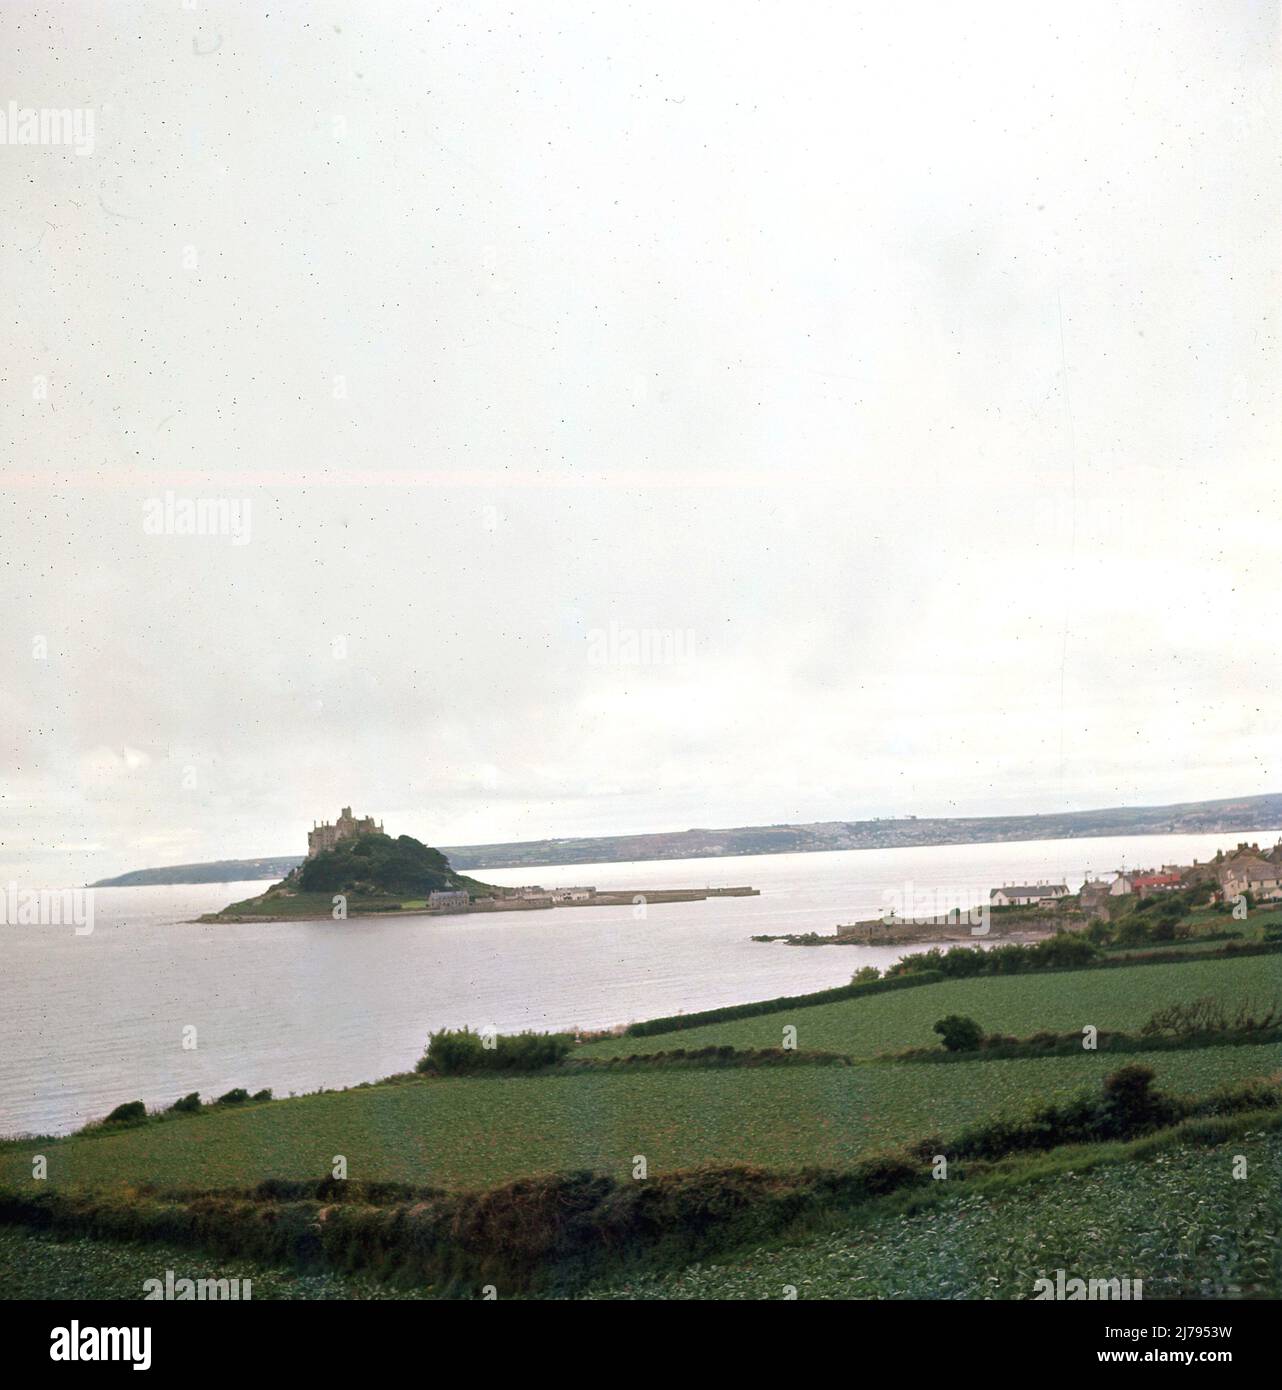 1970, historisch, Saint Micheal's Mount, Mounts Bay, eine historische Burg und Gezeiteninsel vor der Küste von Marazion, Cornwall, England, Großbritannien. Bei Ebbe bedeutet ein Damm aus Granitfelsen, dass die Insel mit dem Festland verbunden ist. Stockfoto